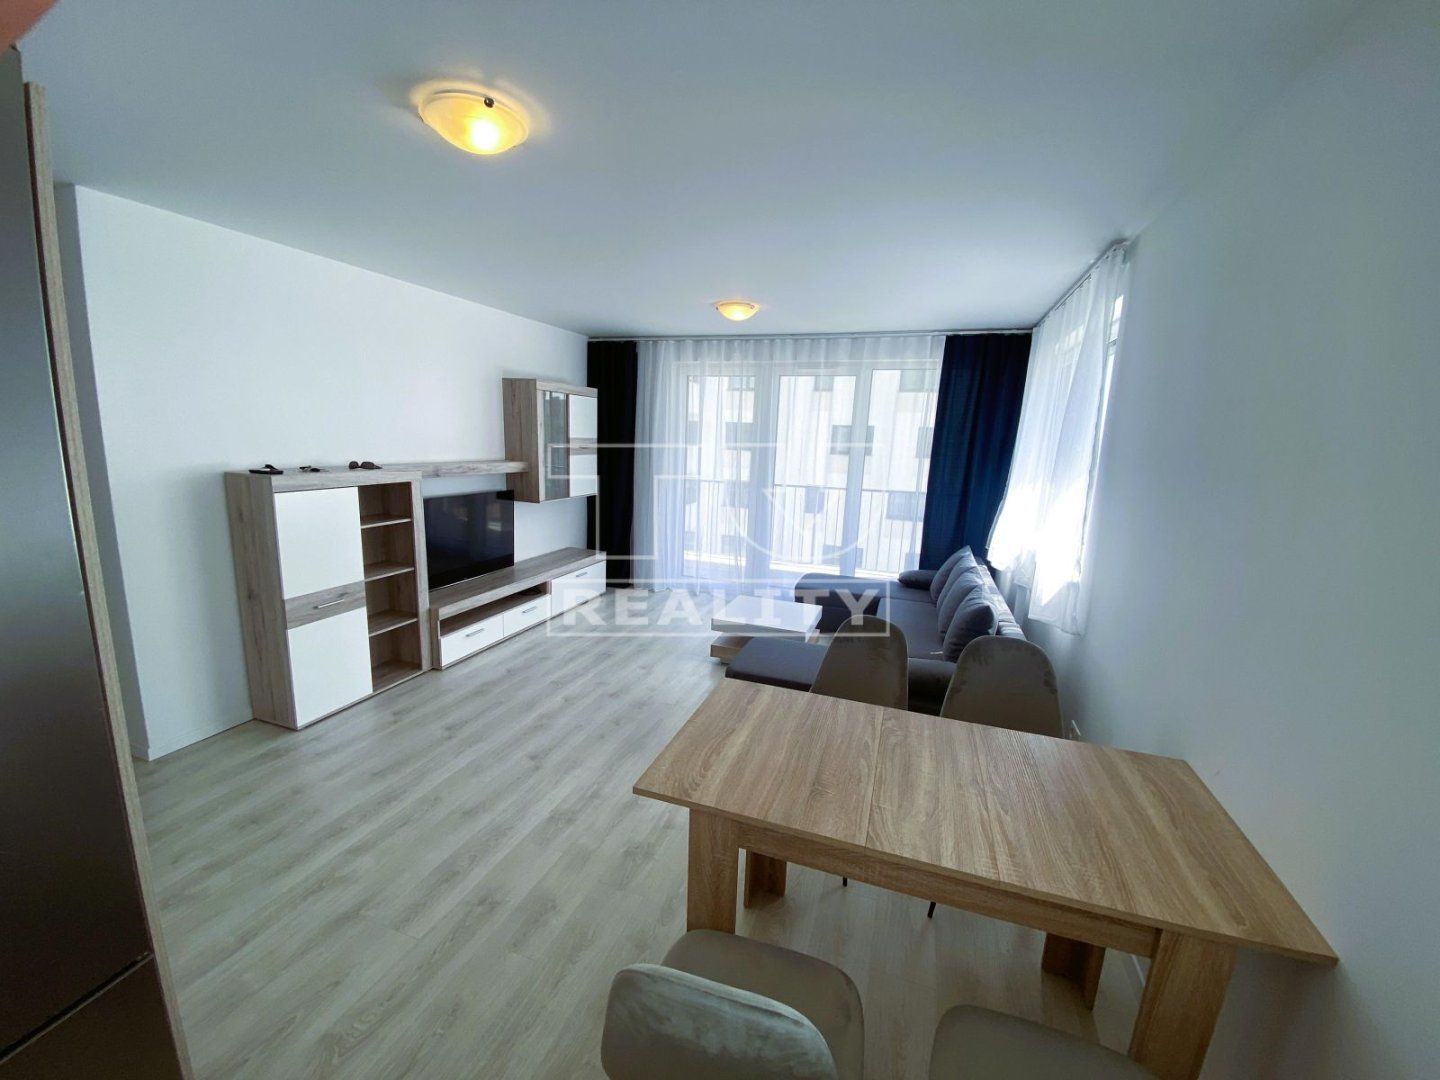 TUreality ponúka na prenájom 2 izbový byt s parkovaním v projekte RNDZ v Bratislave m.č.Rača - 51,44m²